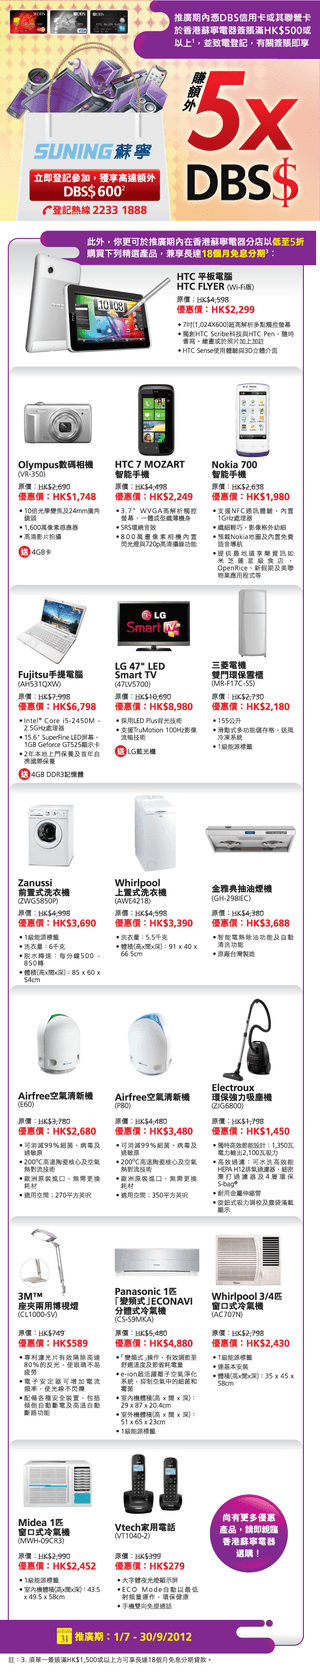 DBS信用卡或聯營卡專享: 香港蘇寧電器購物優惠及額外5X DBS$